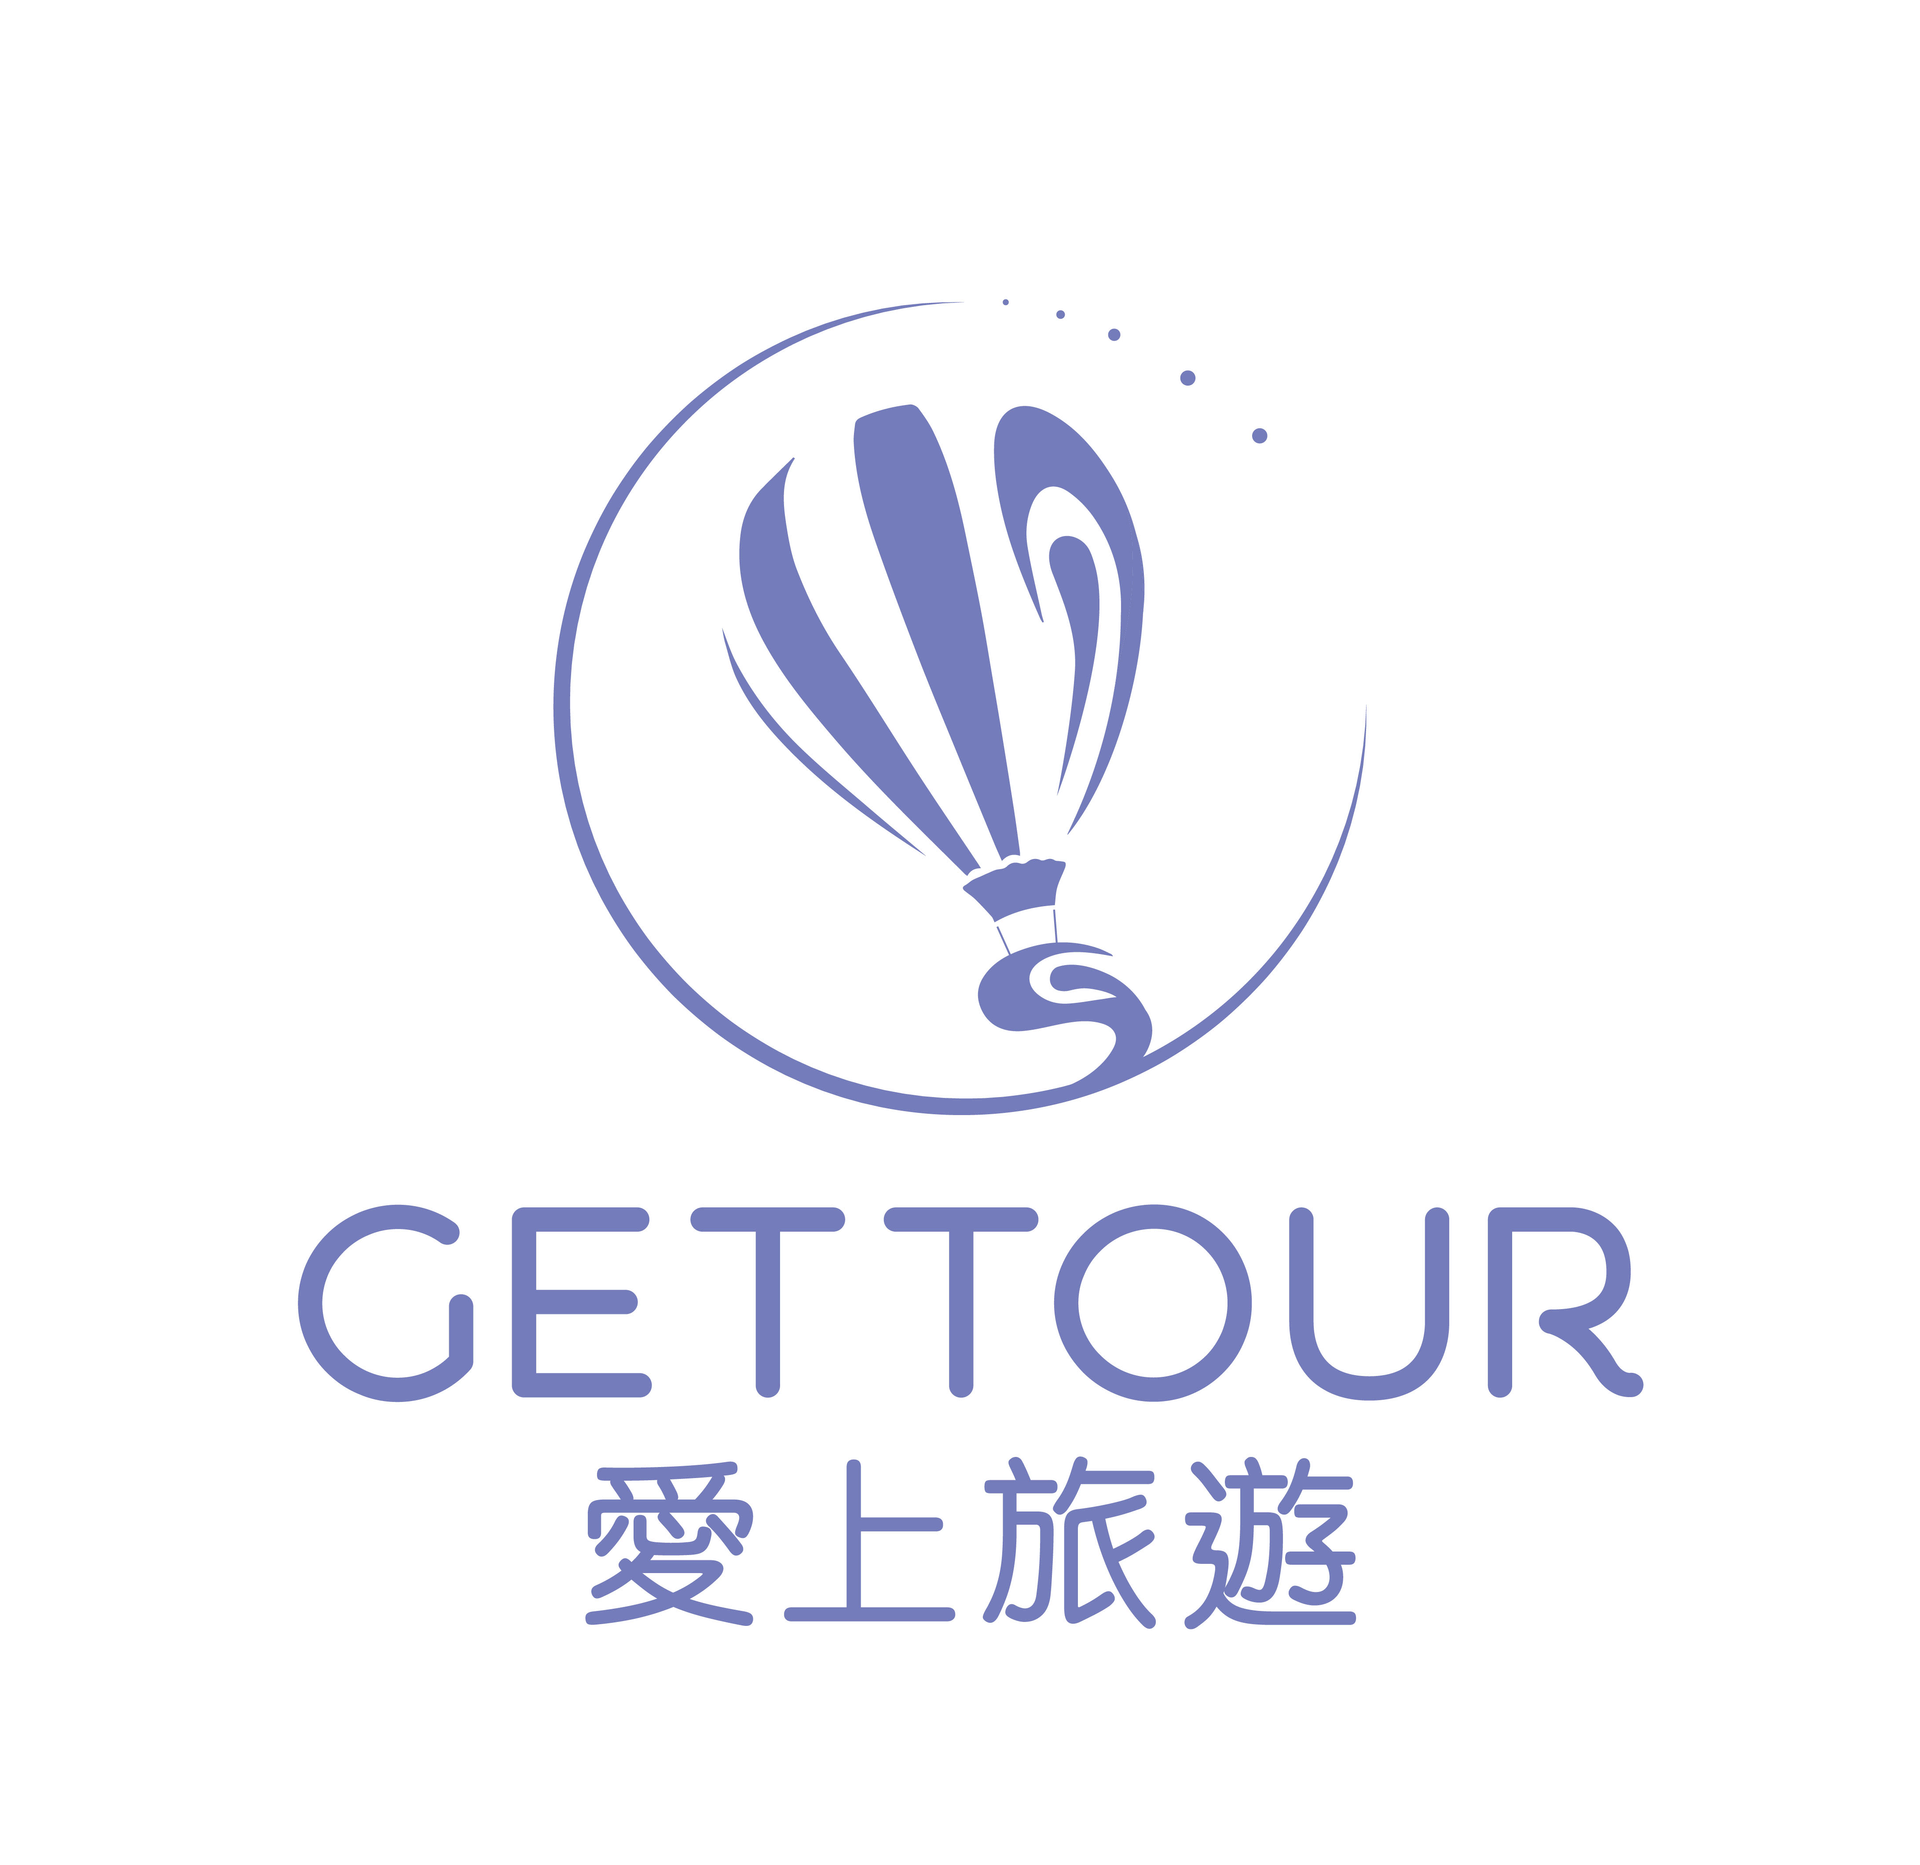 愛上旅遊 GetTour